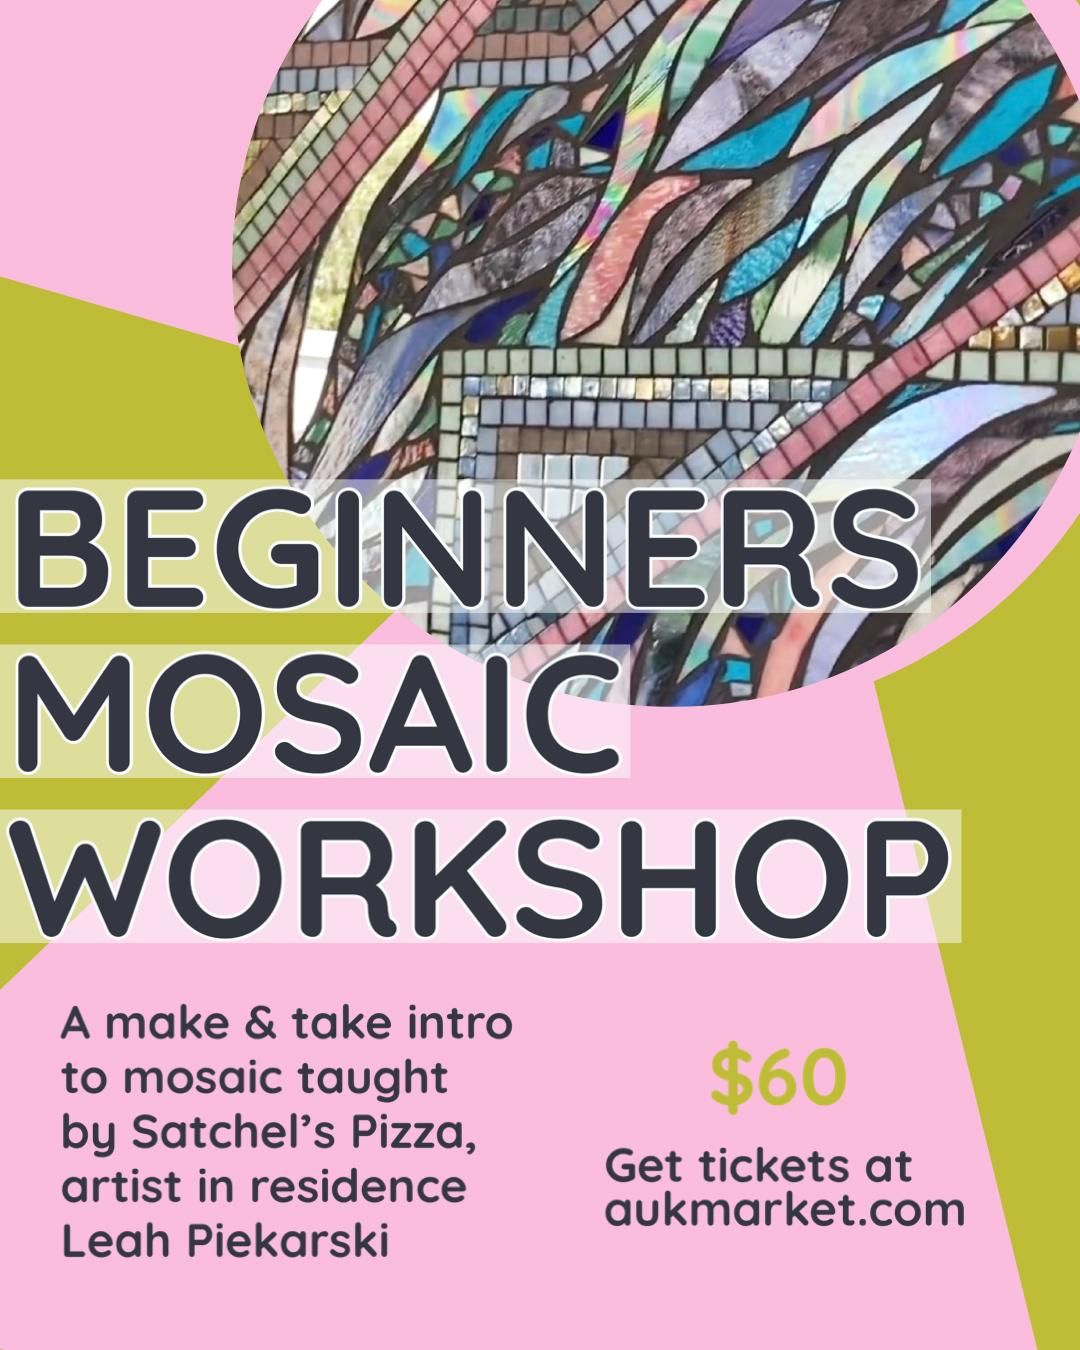 Beginners Mosaic Workshop!